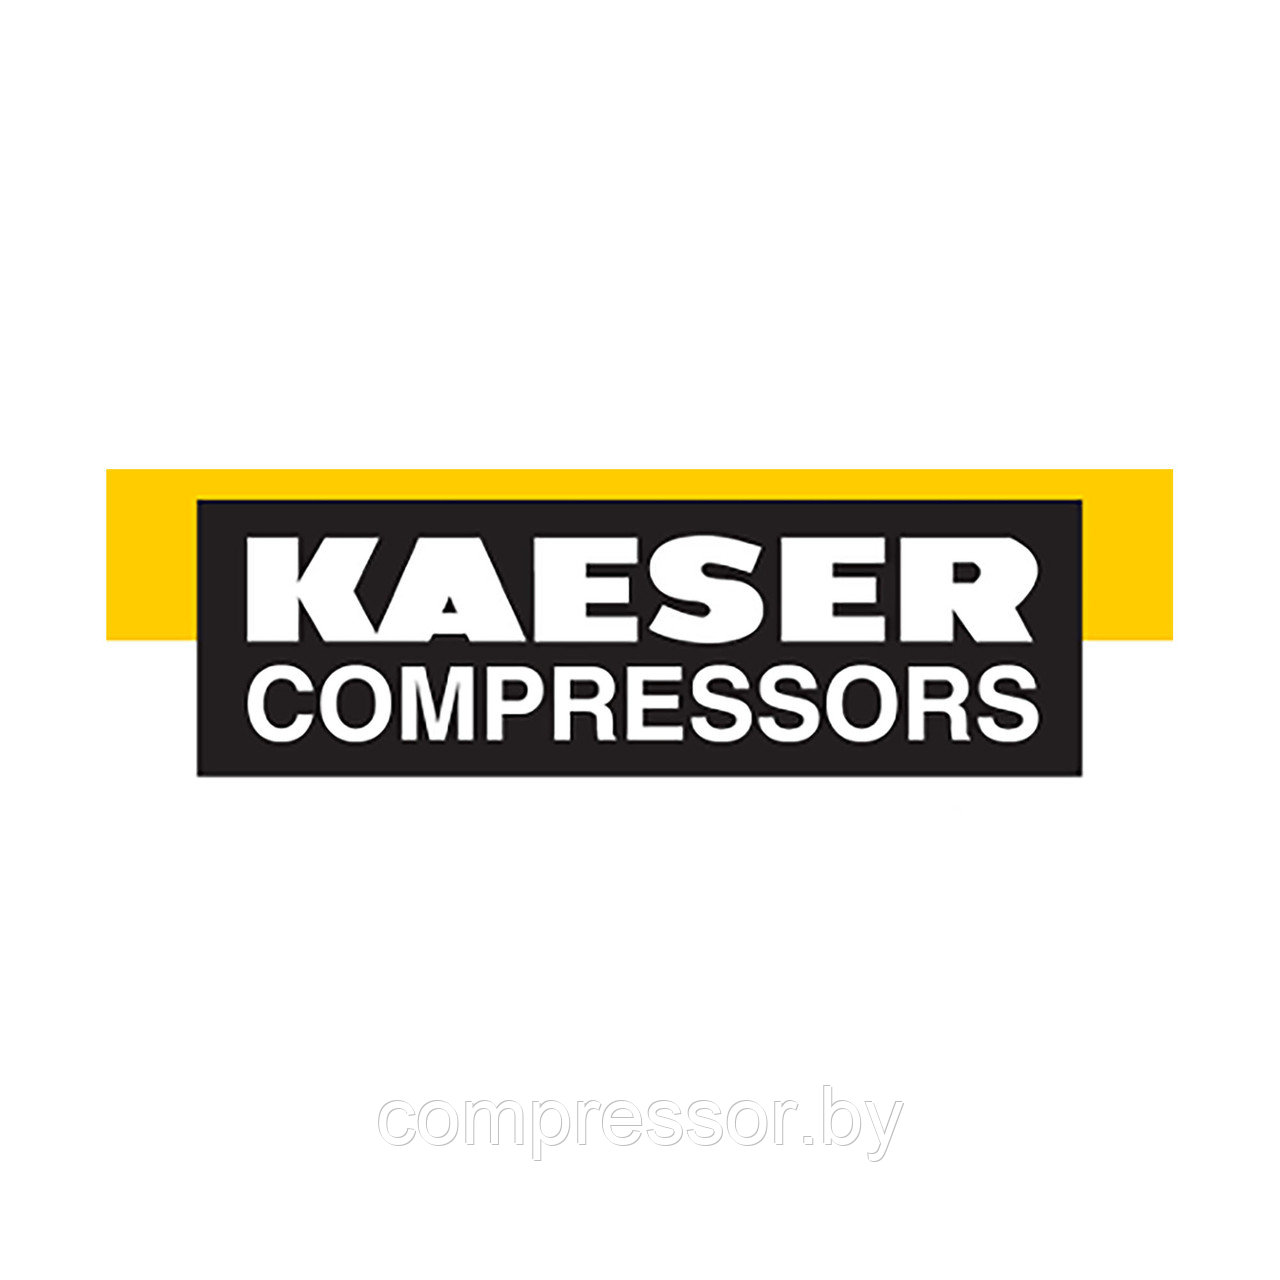 Фильтр для компрессора Kaeser 9.2119.0